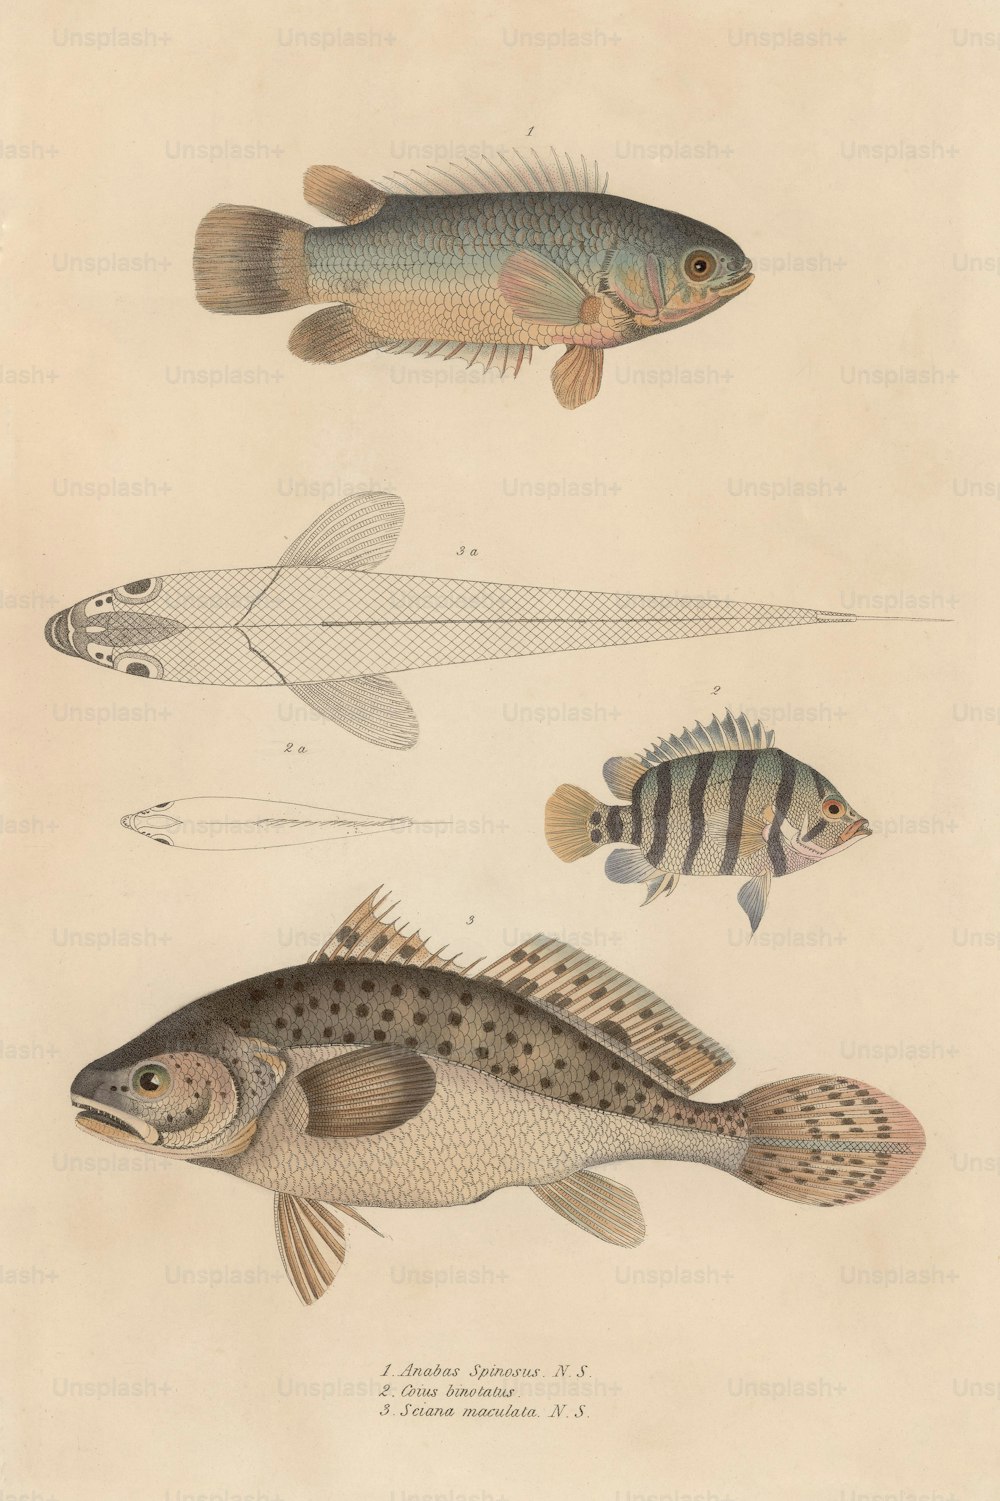 Varios peces, incluyendo anabas spinosus, coius binotatus y sciana maculata, alrededor de 1850. (Foto de Hulton Archive/Getty Images)